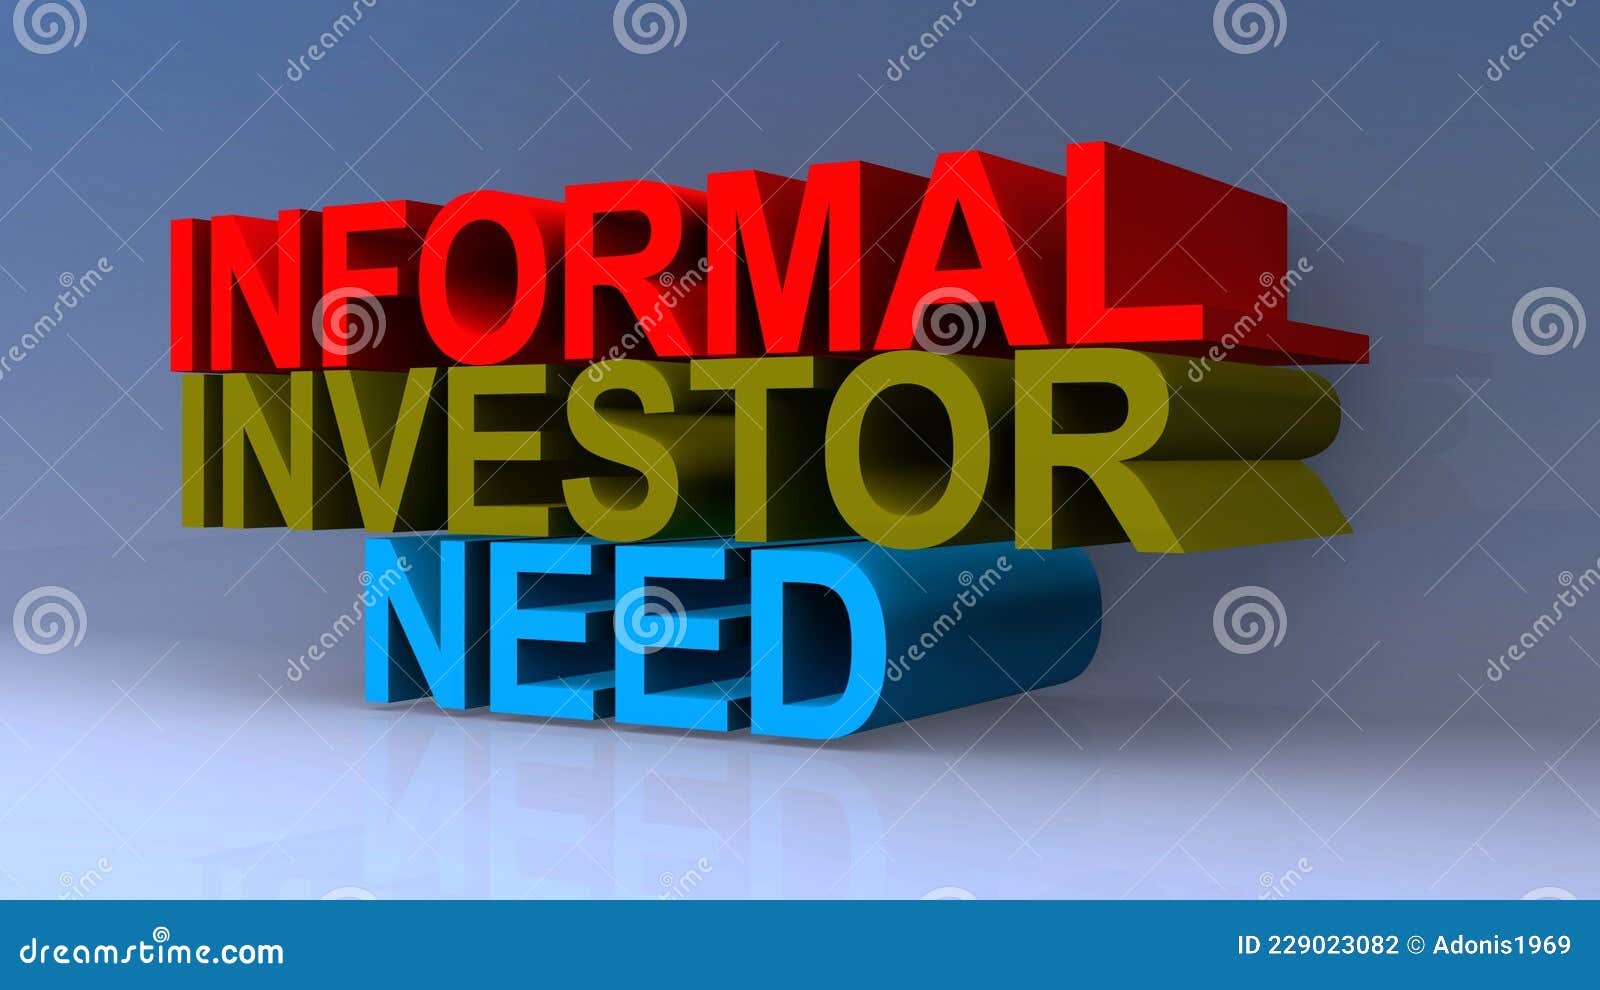 Investor: Đầu tư luôn là cách tốt nhất để tạo ra sự thịnh vượng và ổn định tài chính cho tương lai. Hãy xem hình ảnh liên quan để tìm hiểu về những cách đầu tư thông minh và cơ hội đầu tư hấp dẫn nhất hiện nay.